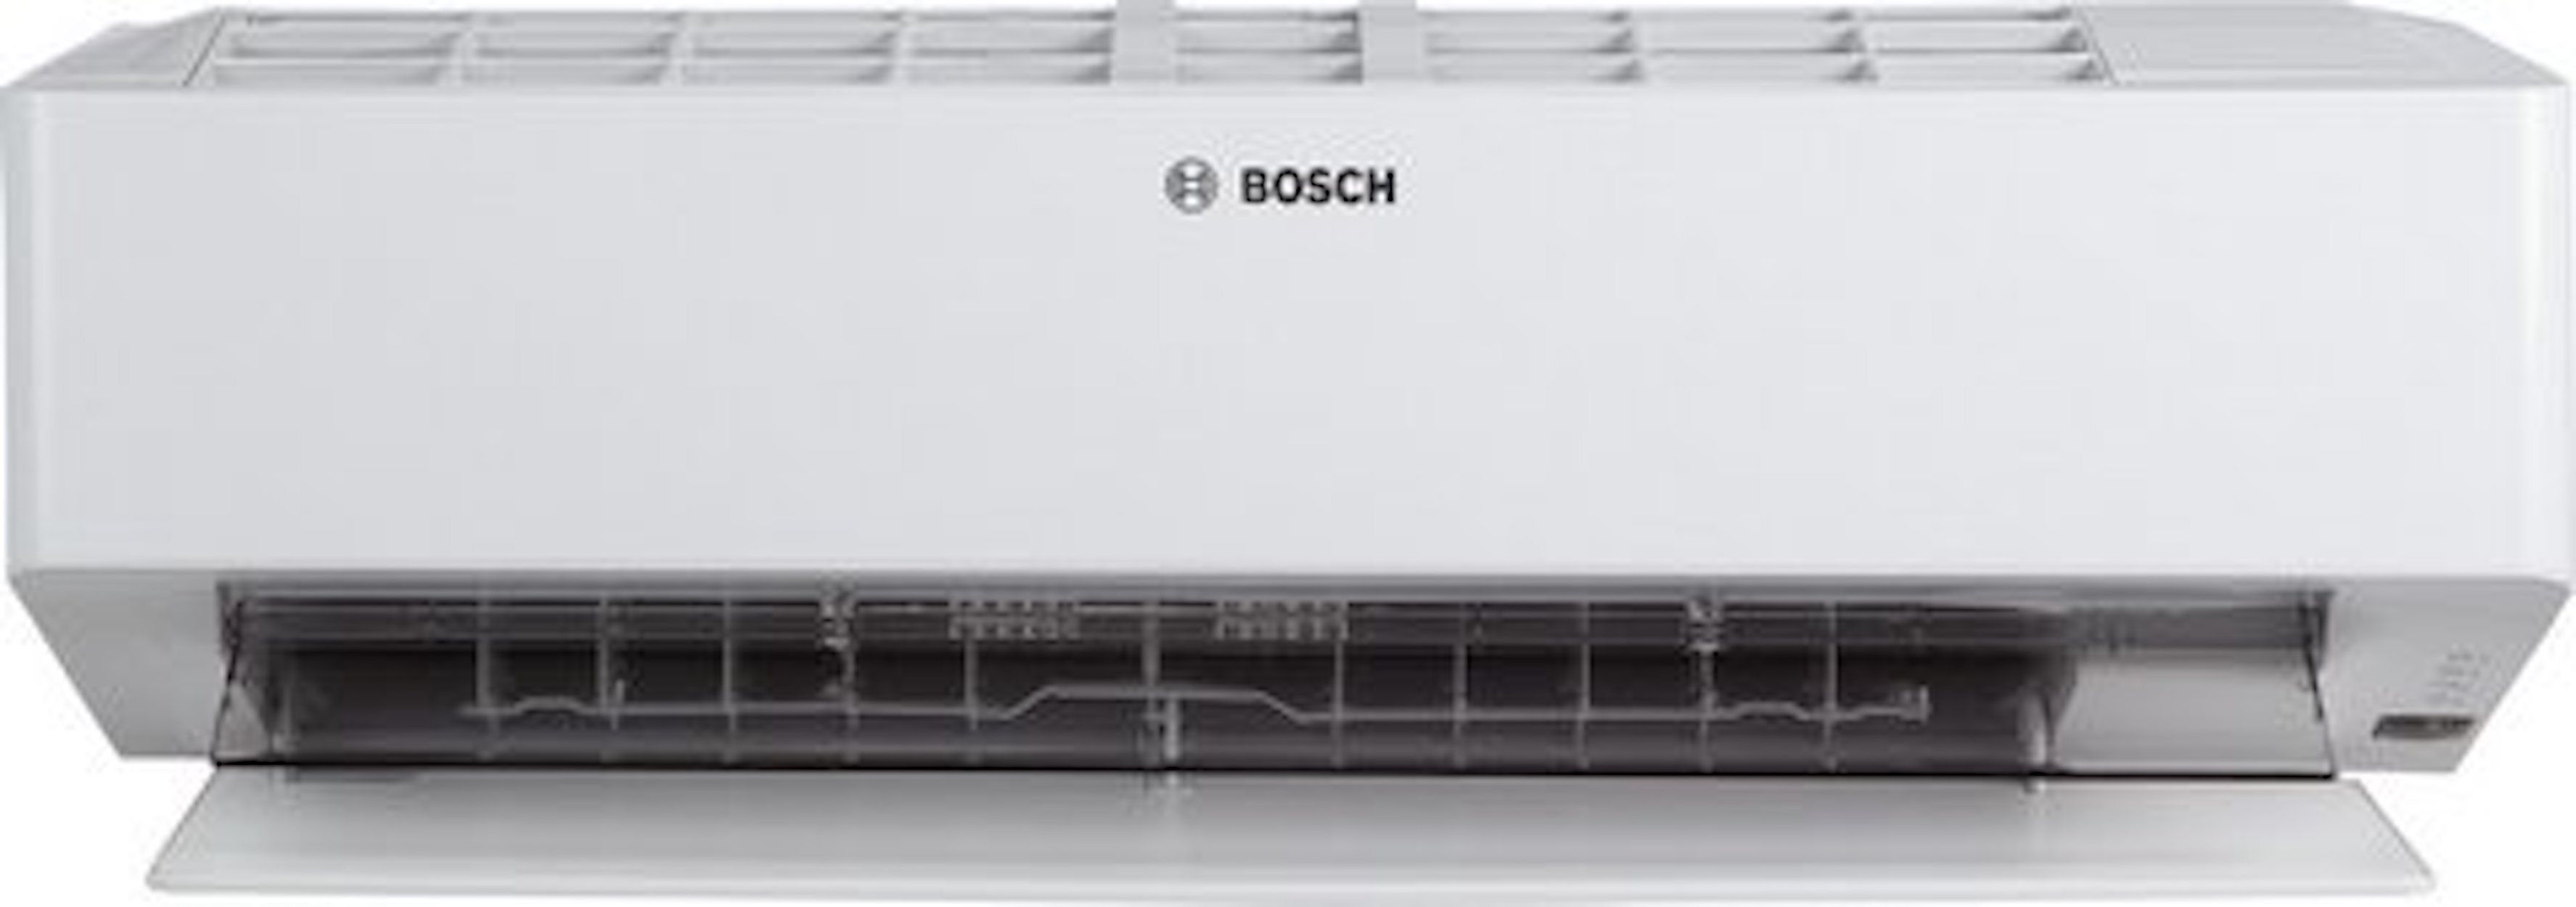 BOSCH Klimagerät CL8000i-W 25 E, Split Inneneinheit, 2,5 kW, Coanda Air Flow